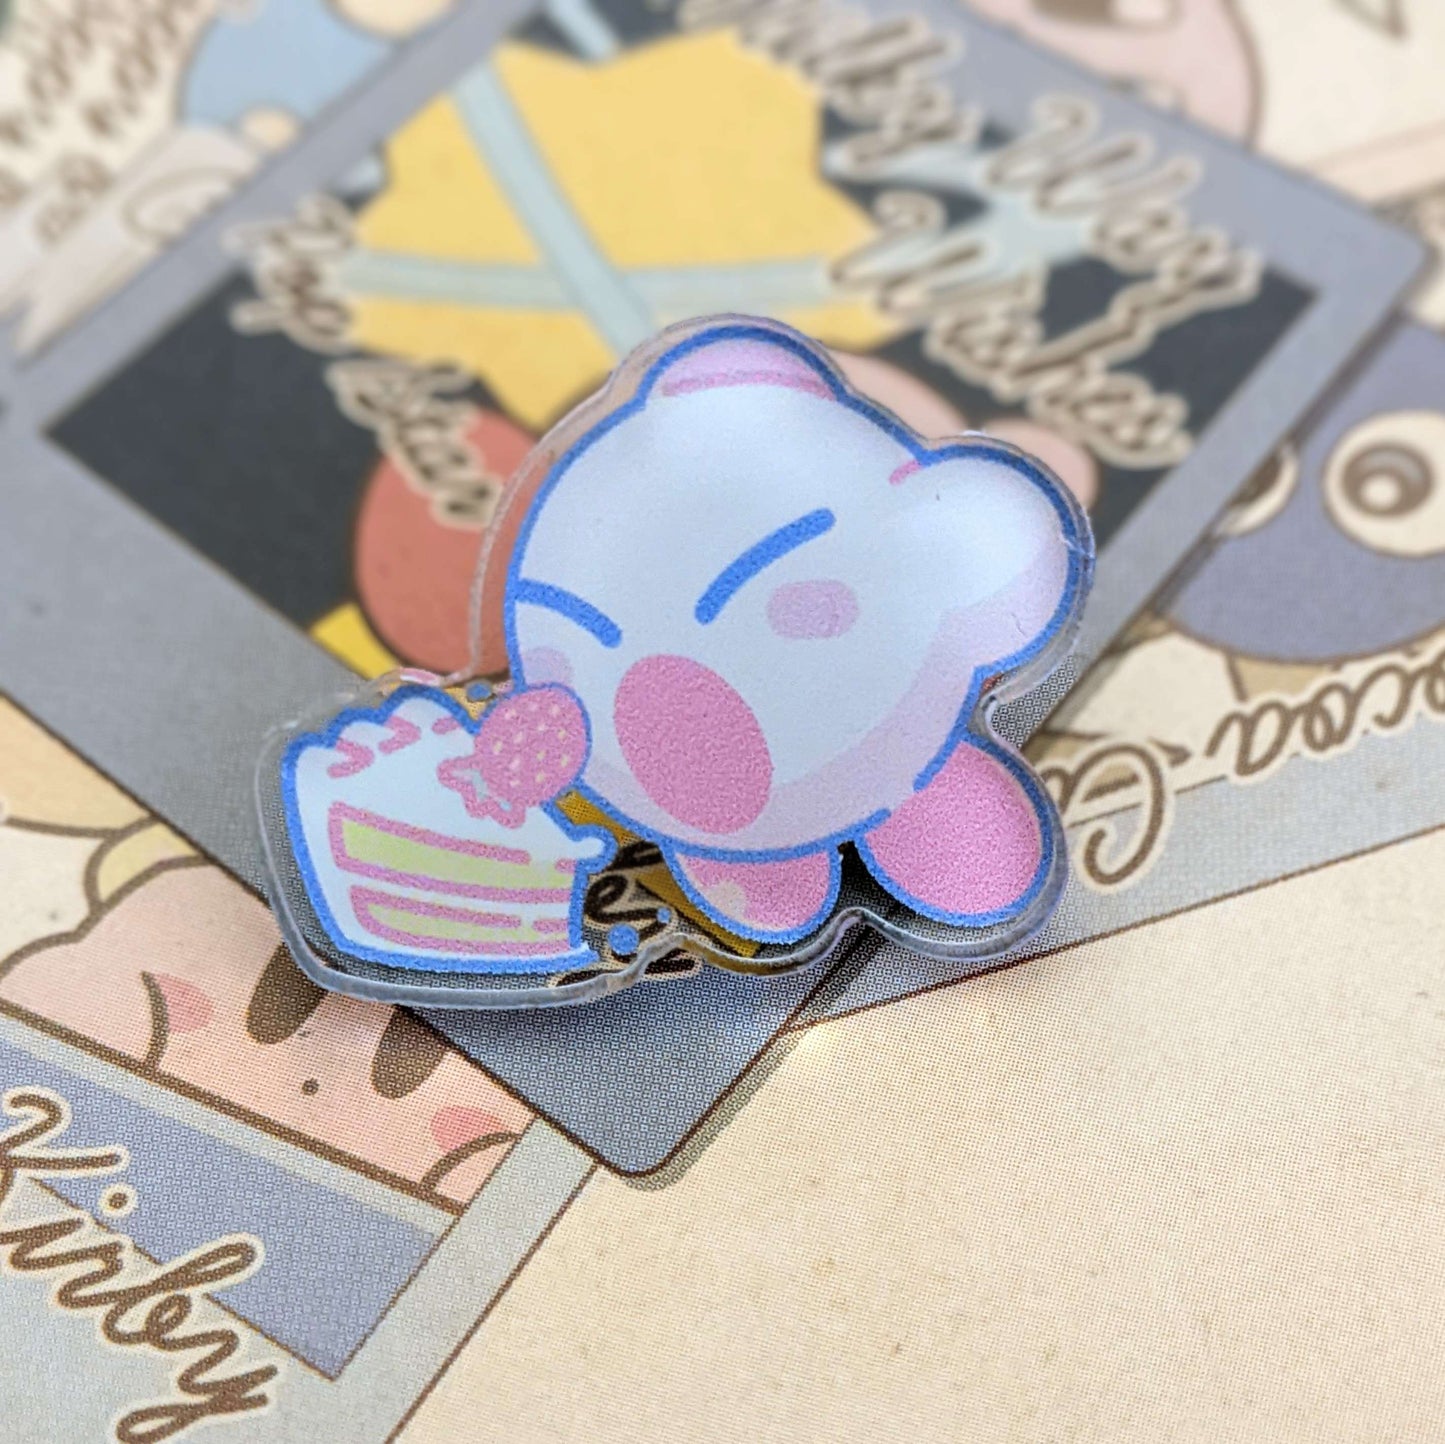 Cake Time Kirby - 1" Acrylic Pin